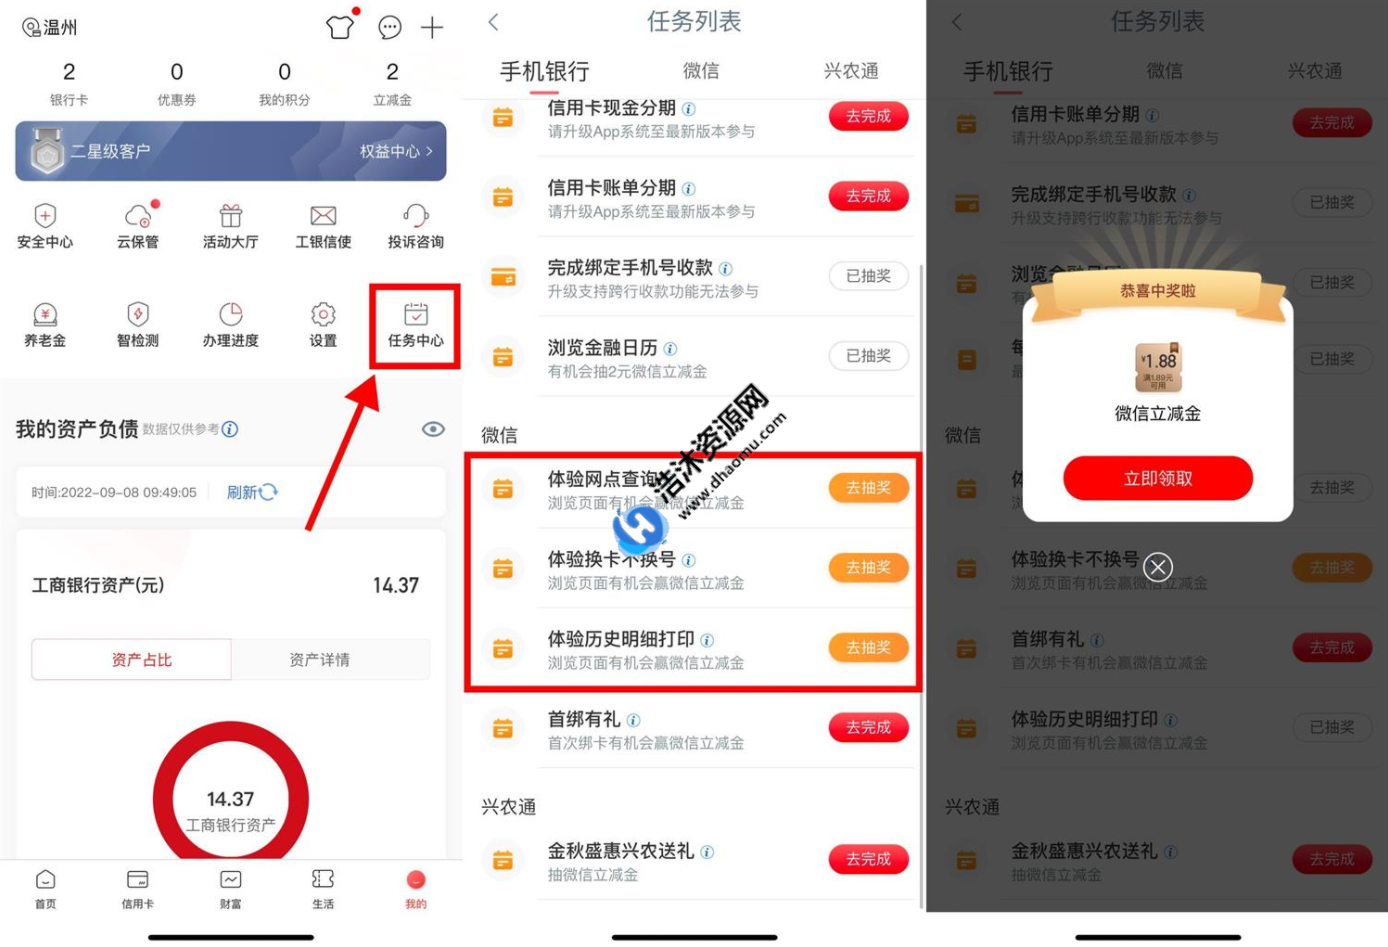 中国工商银行工行免费抽取3个1.88元微信立减金红包